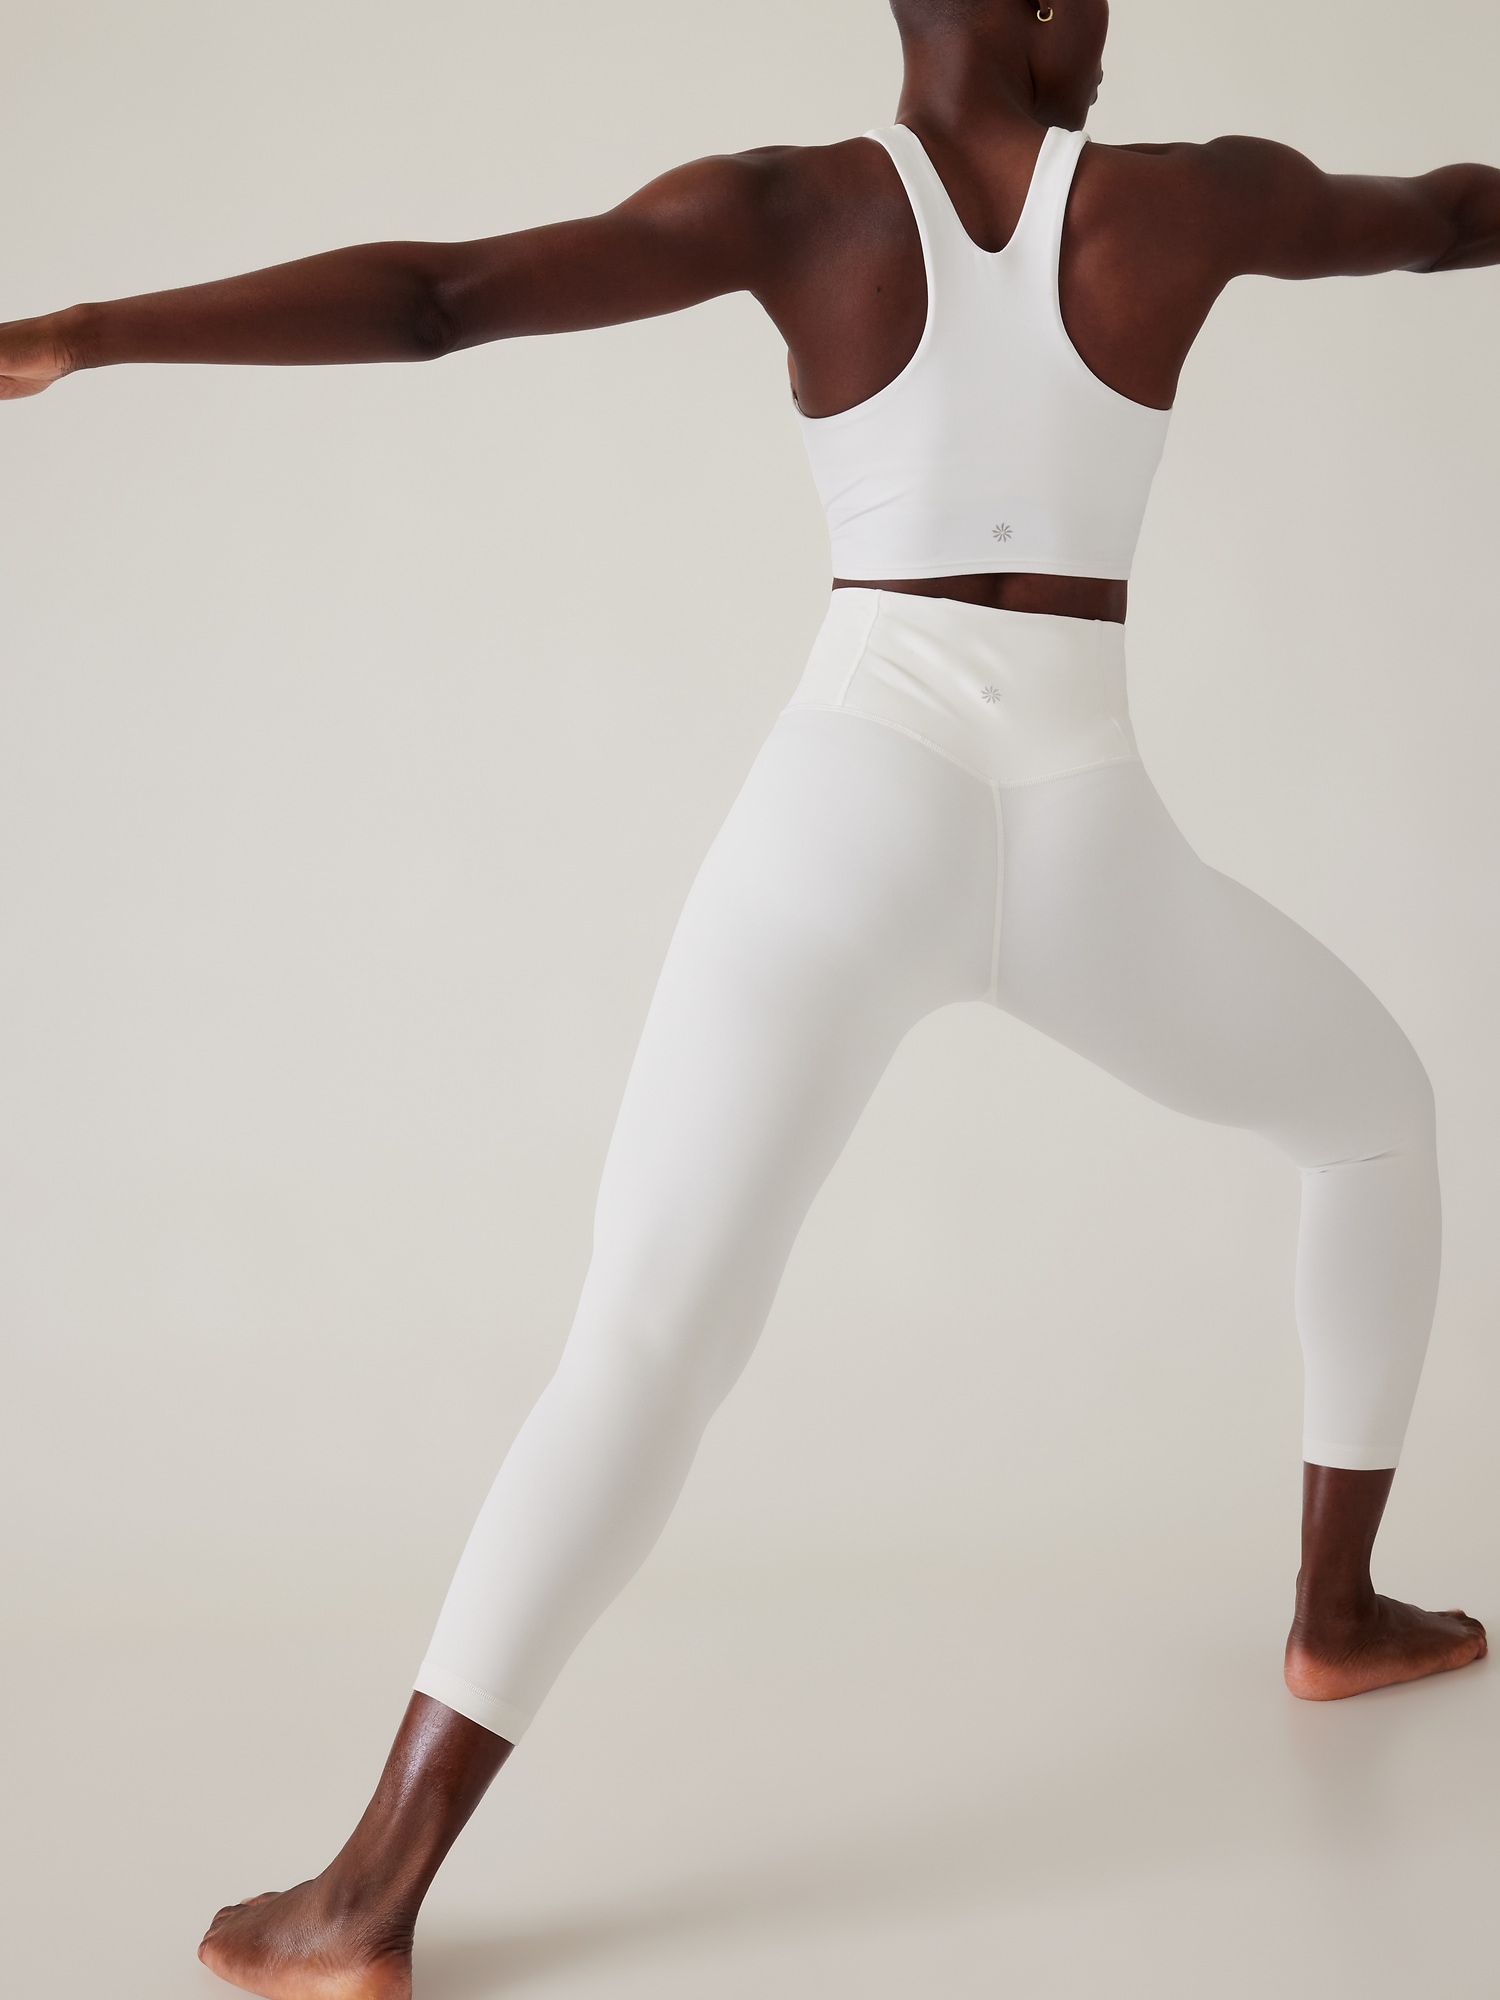 Athleta Elation Asym 7/8 Tight Black Tan and White Leggings Size